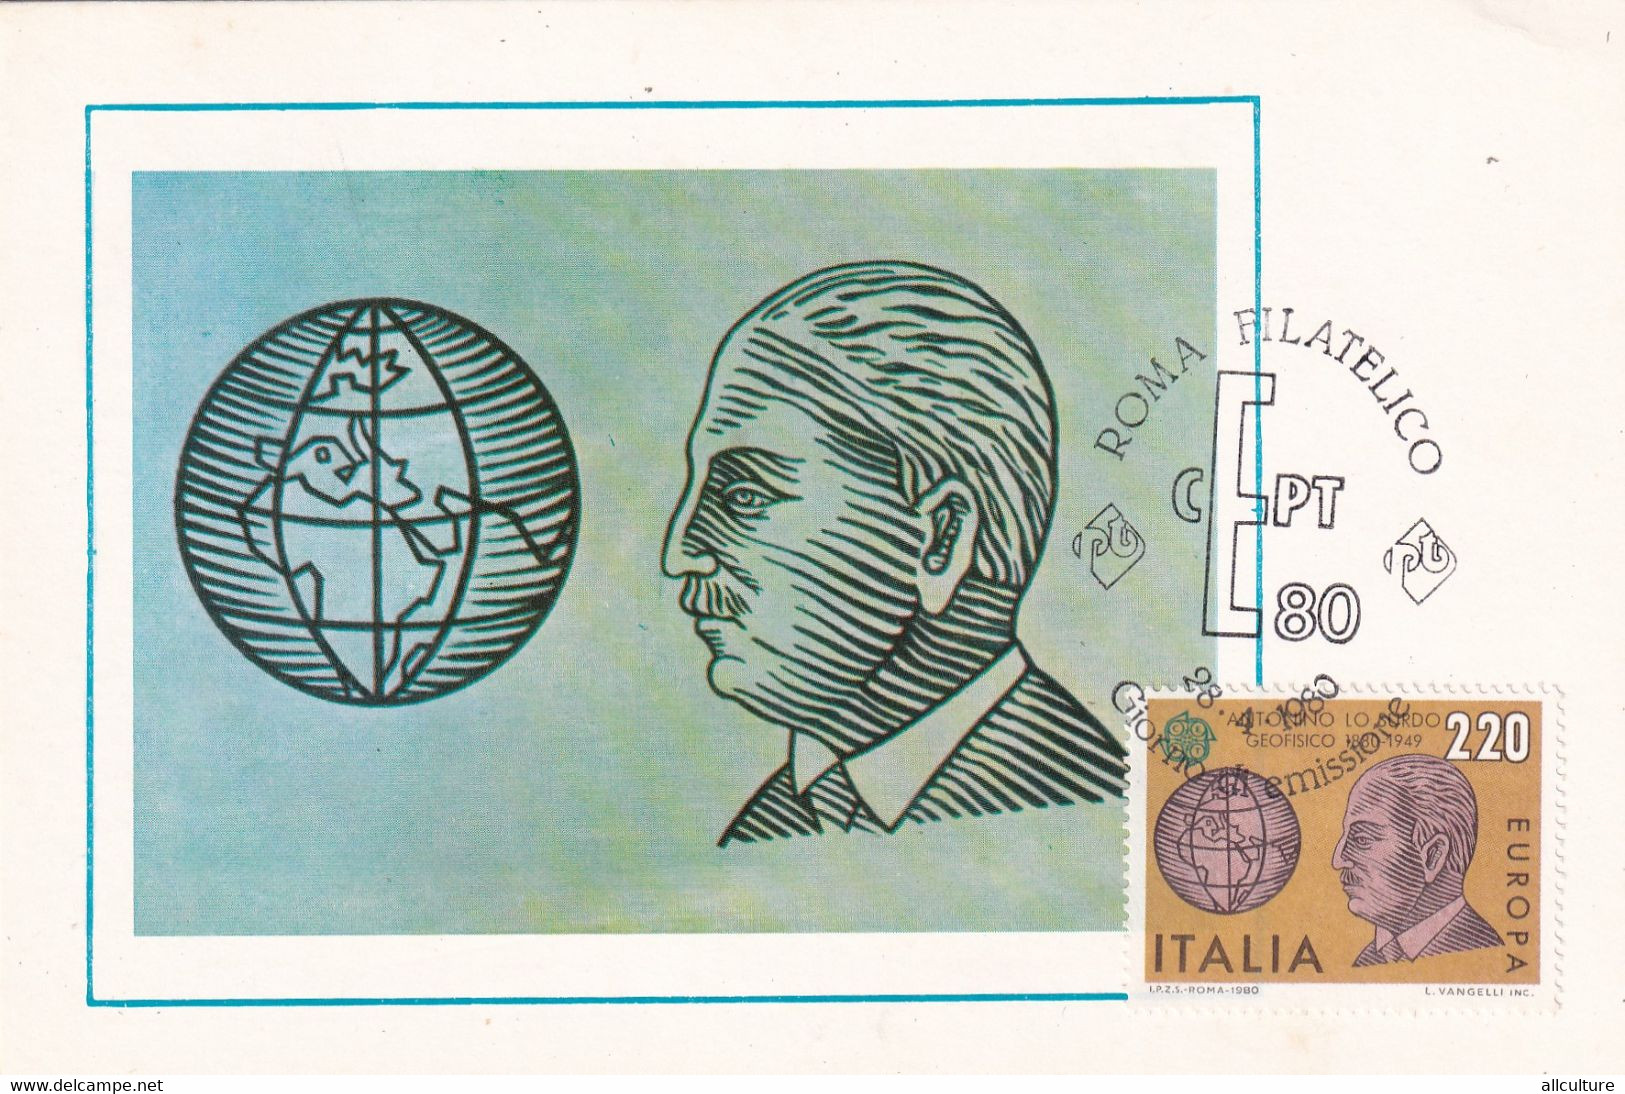 A10908- ANTONINO LO SURDO, GEOPHYSICAL, ROMA FILATELICO 1980 MAXIMUM CARD ITALIA  USED STAMPS - Cartoline Maximum